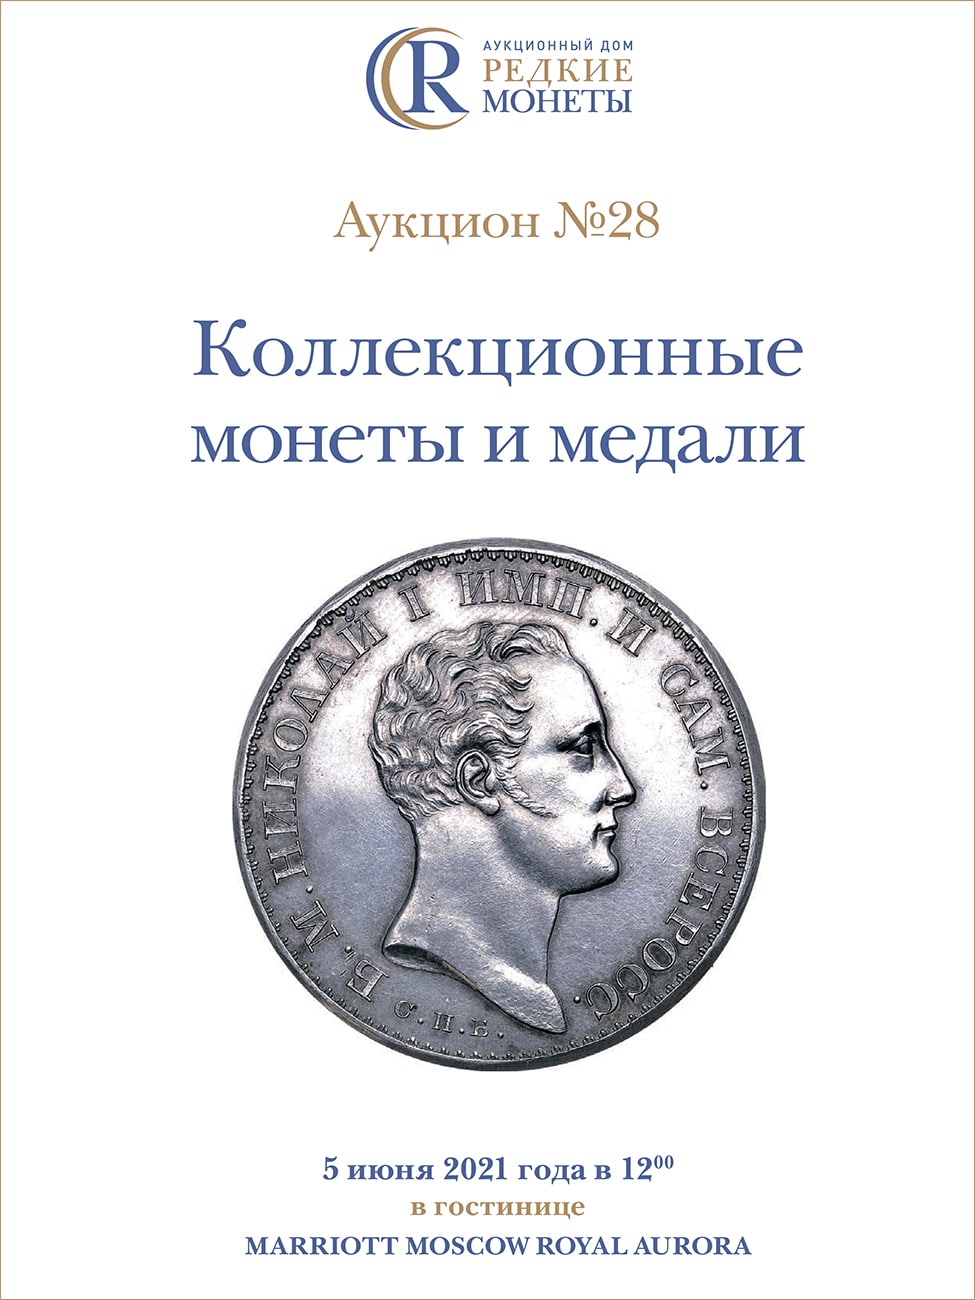 Артикул №21-09777,  Коллекционные Монеты, Аукцион №28, 5 июня 2021 года.